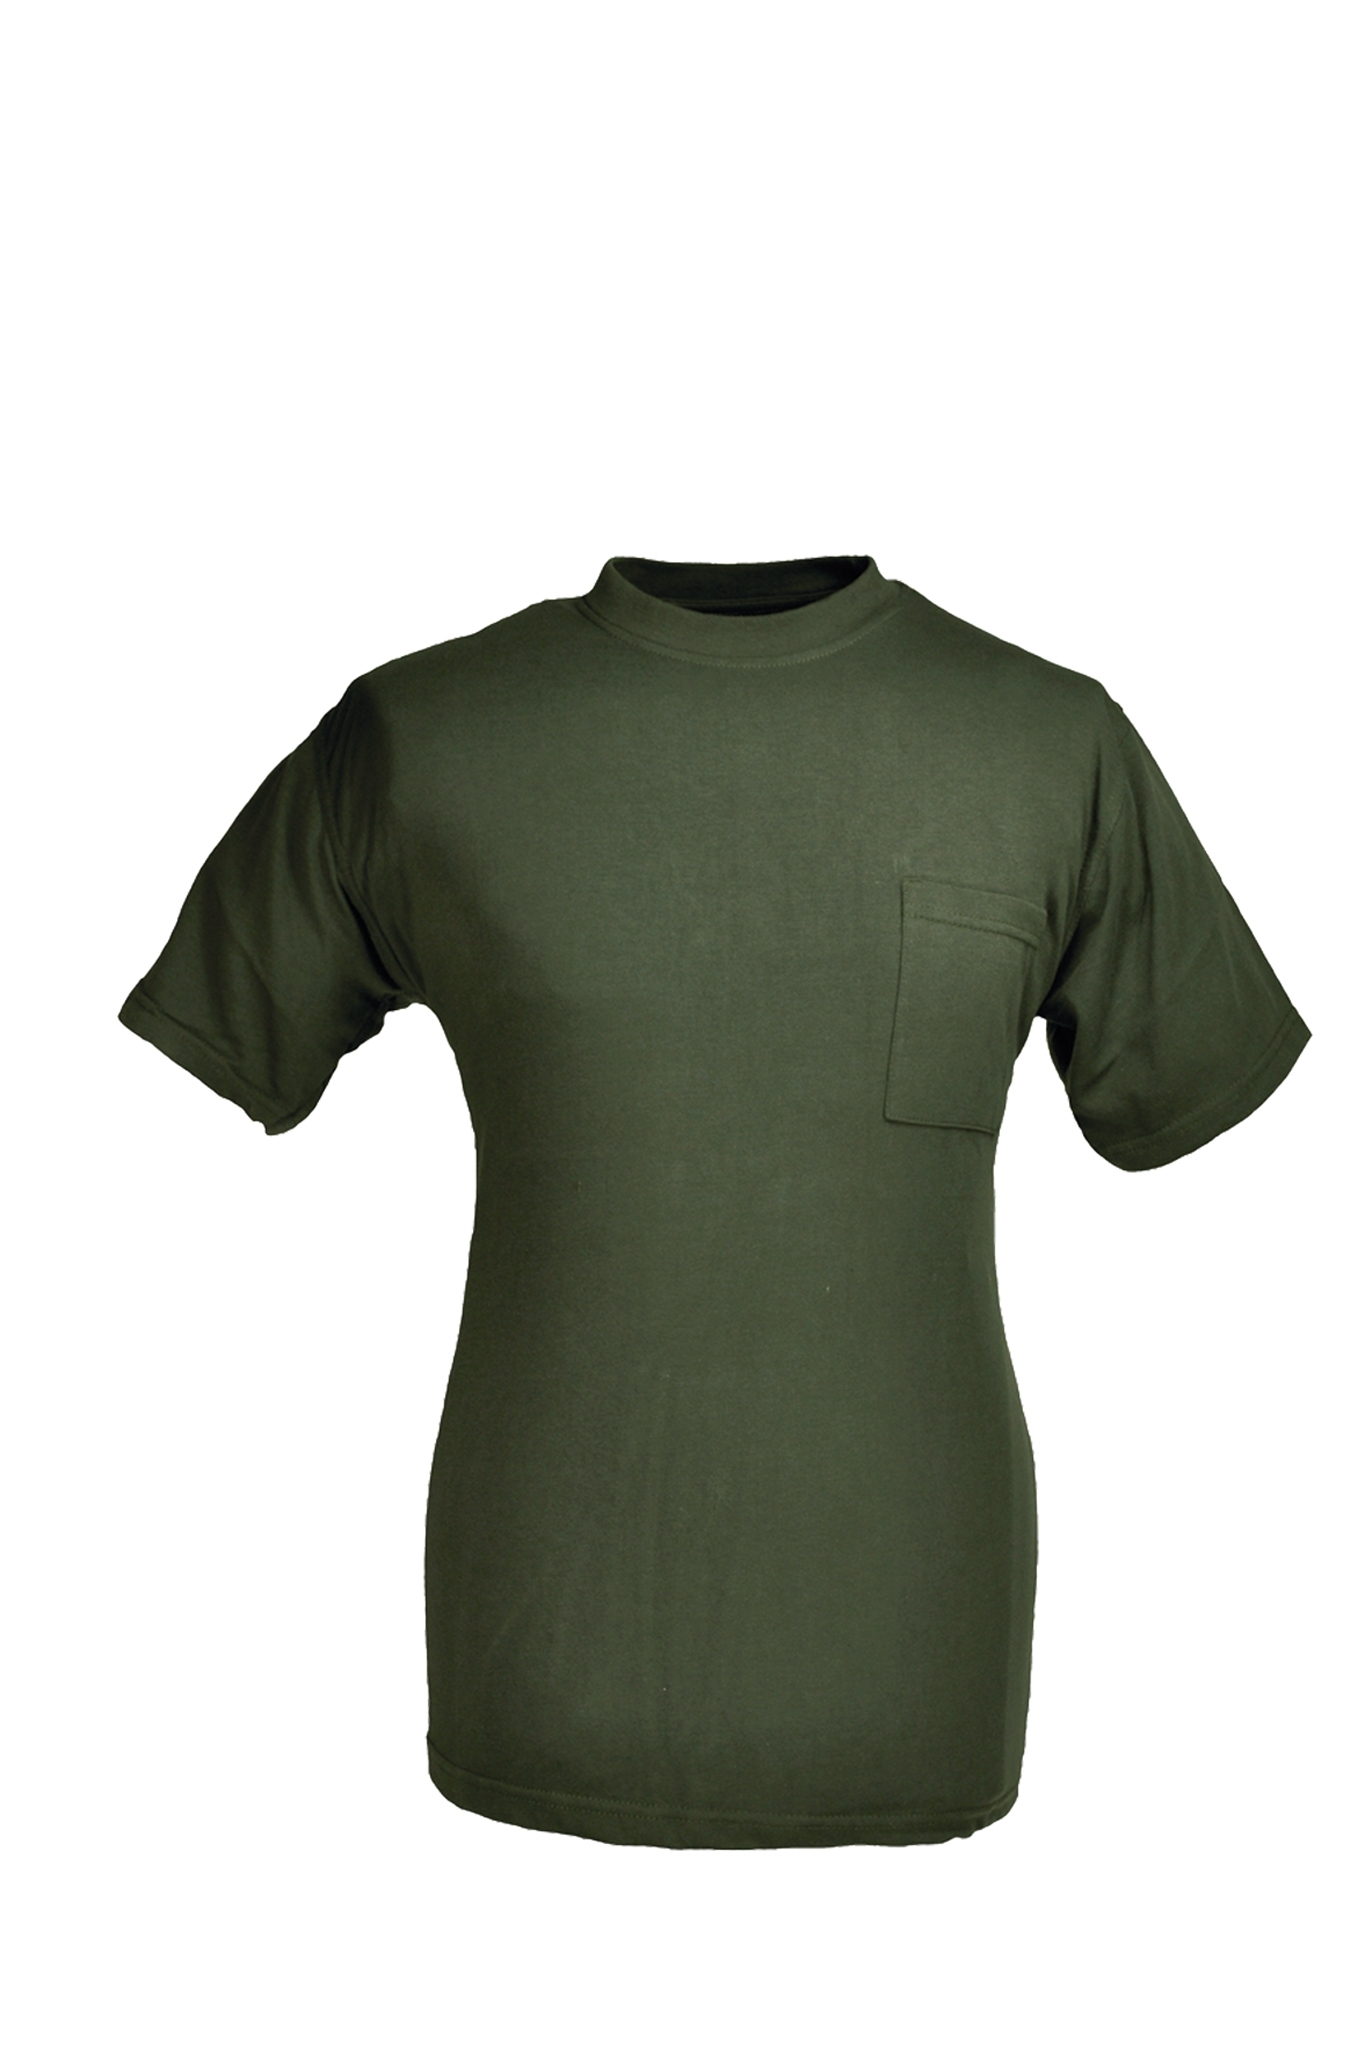 Rundhals T-Shirt oliv Gr.3XL 10227843